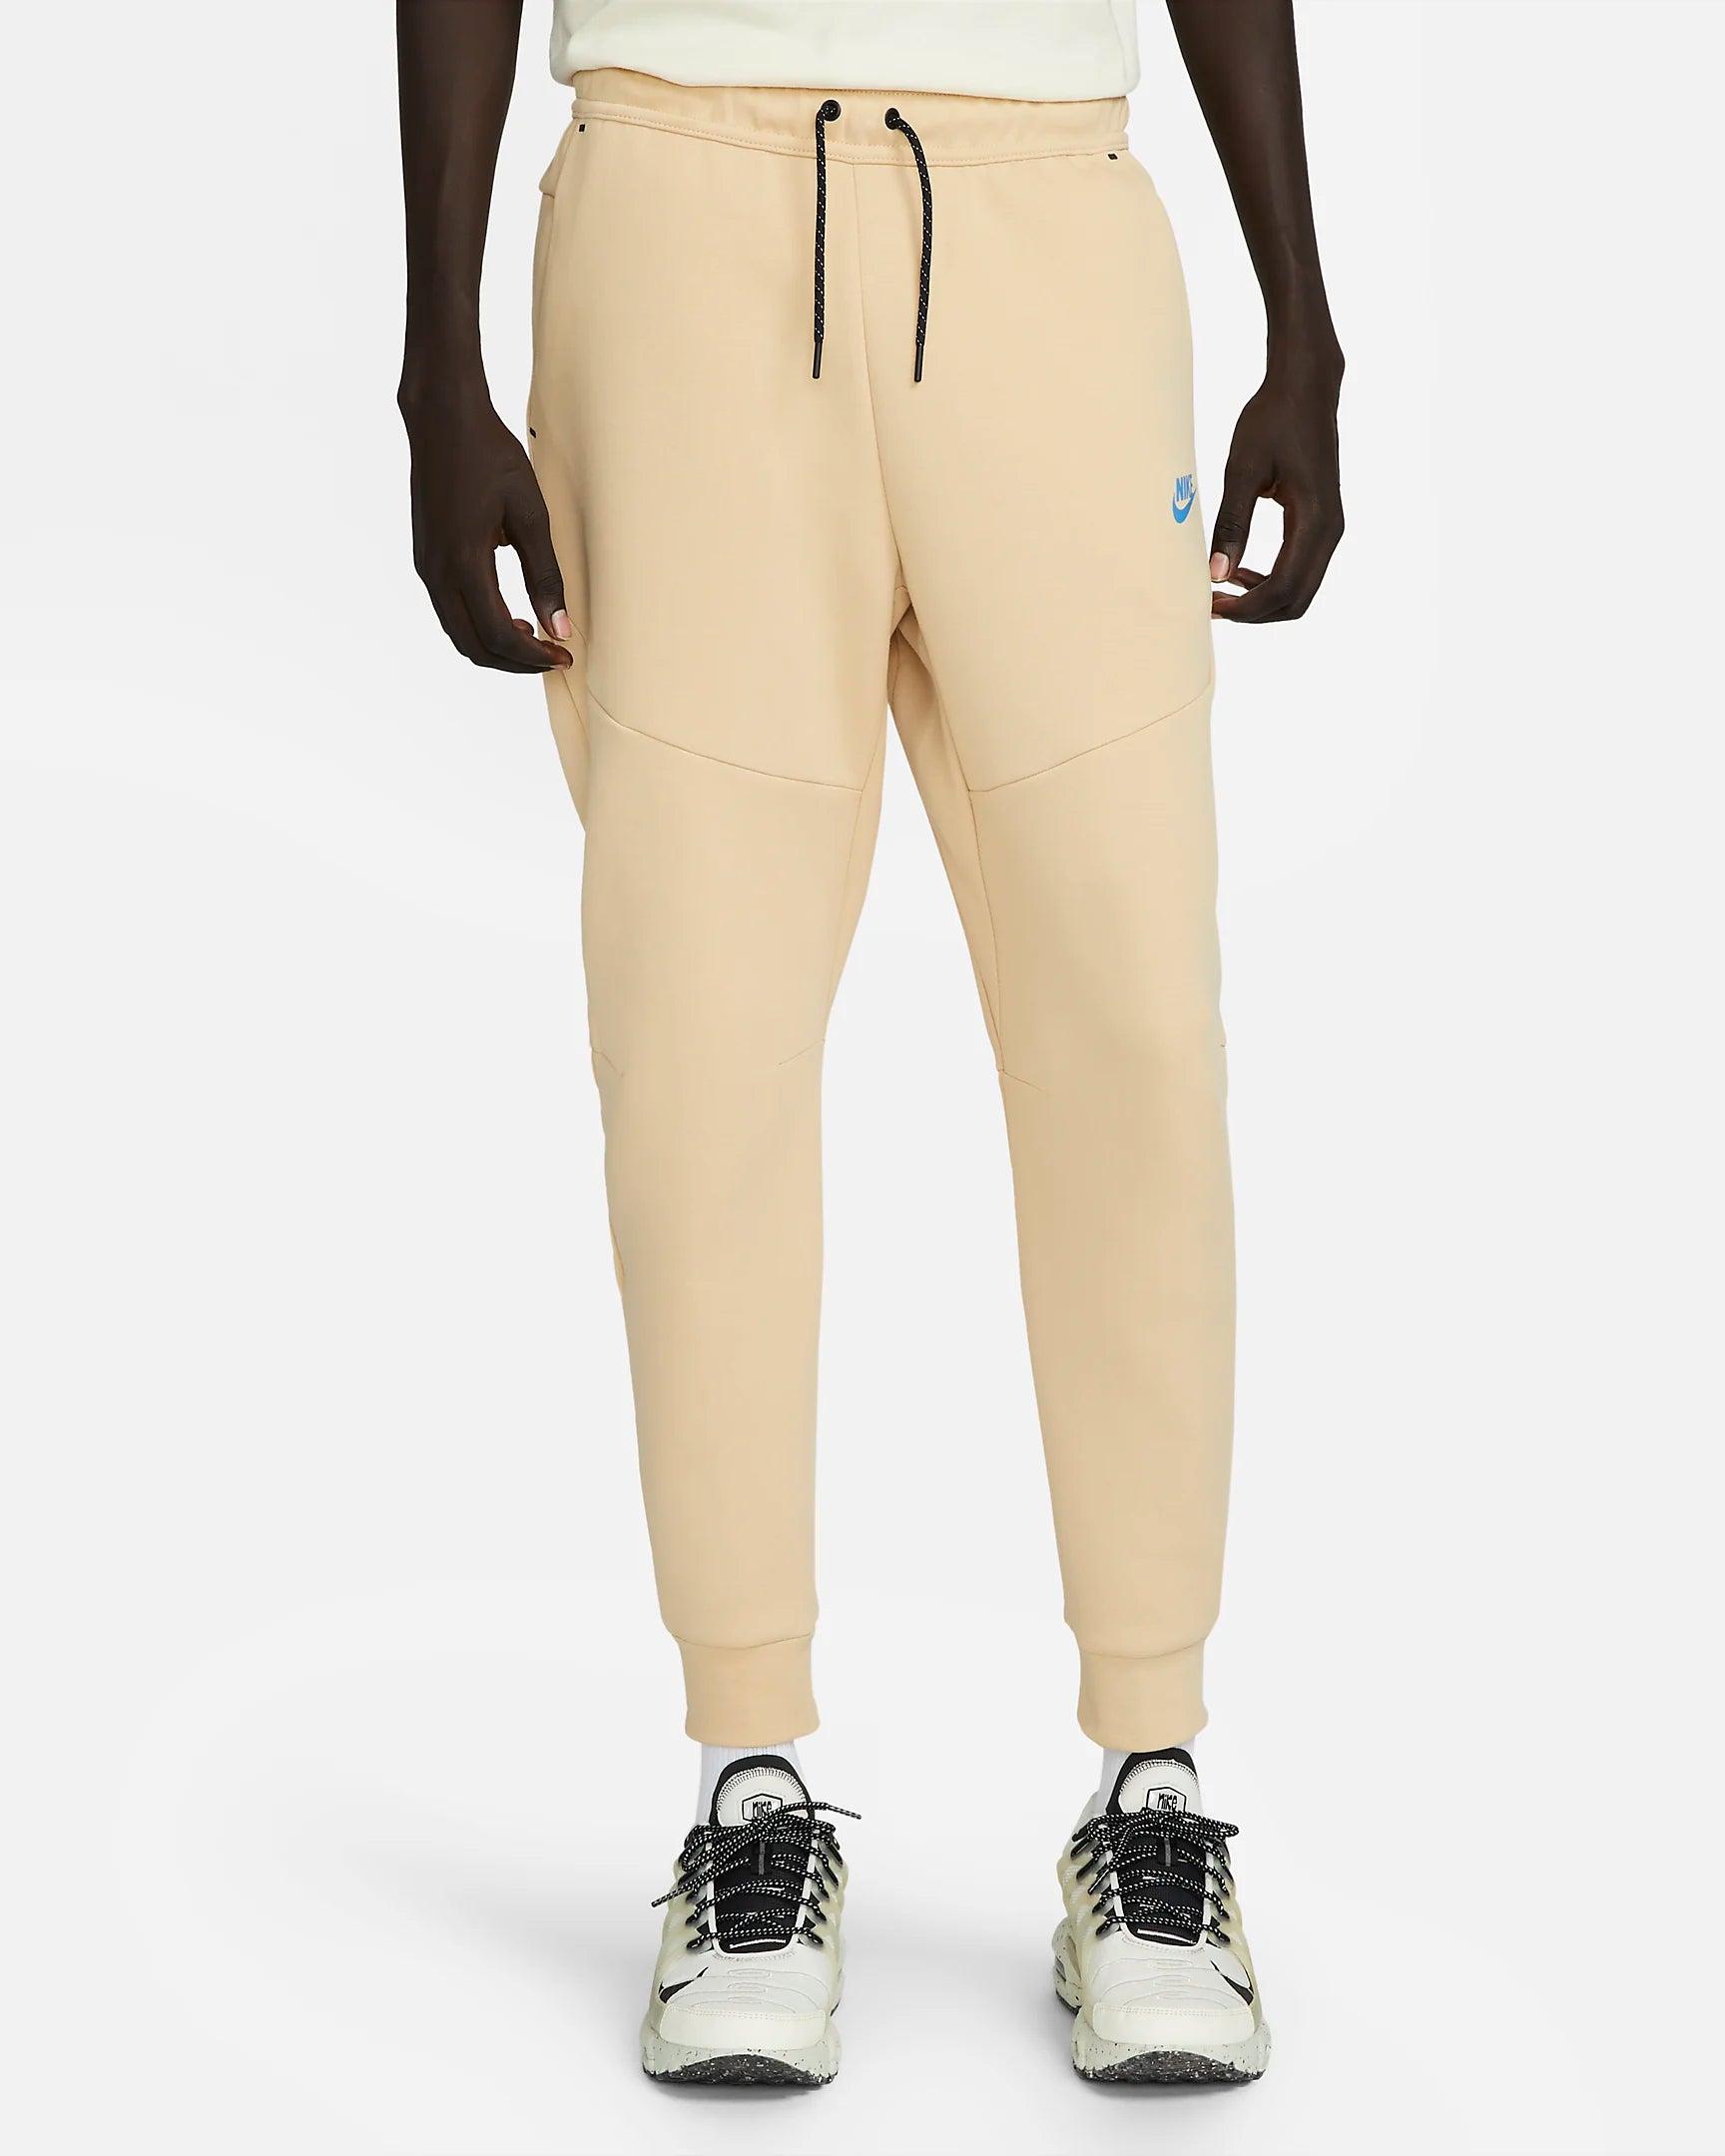 Nike Tech Fleece jogging pants - Beige/Blue